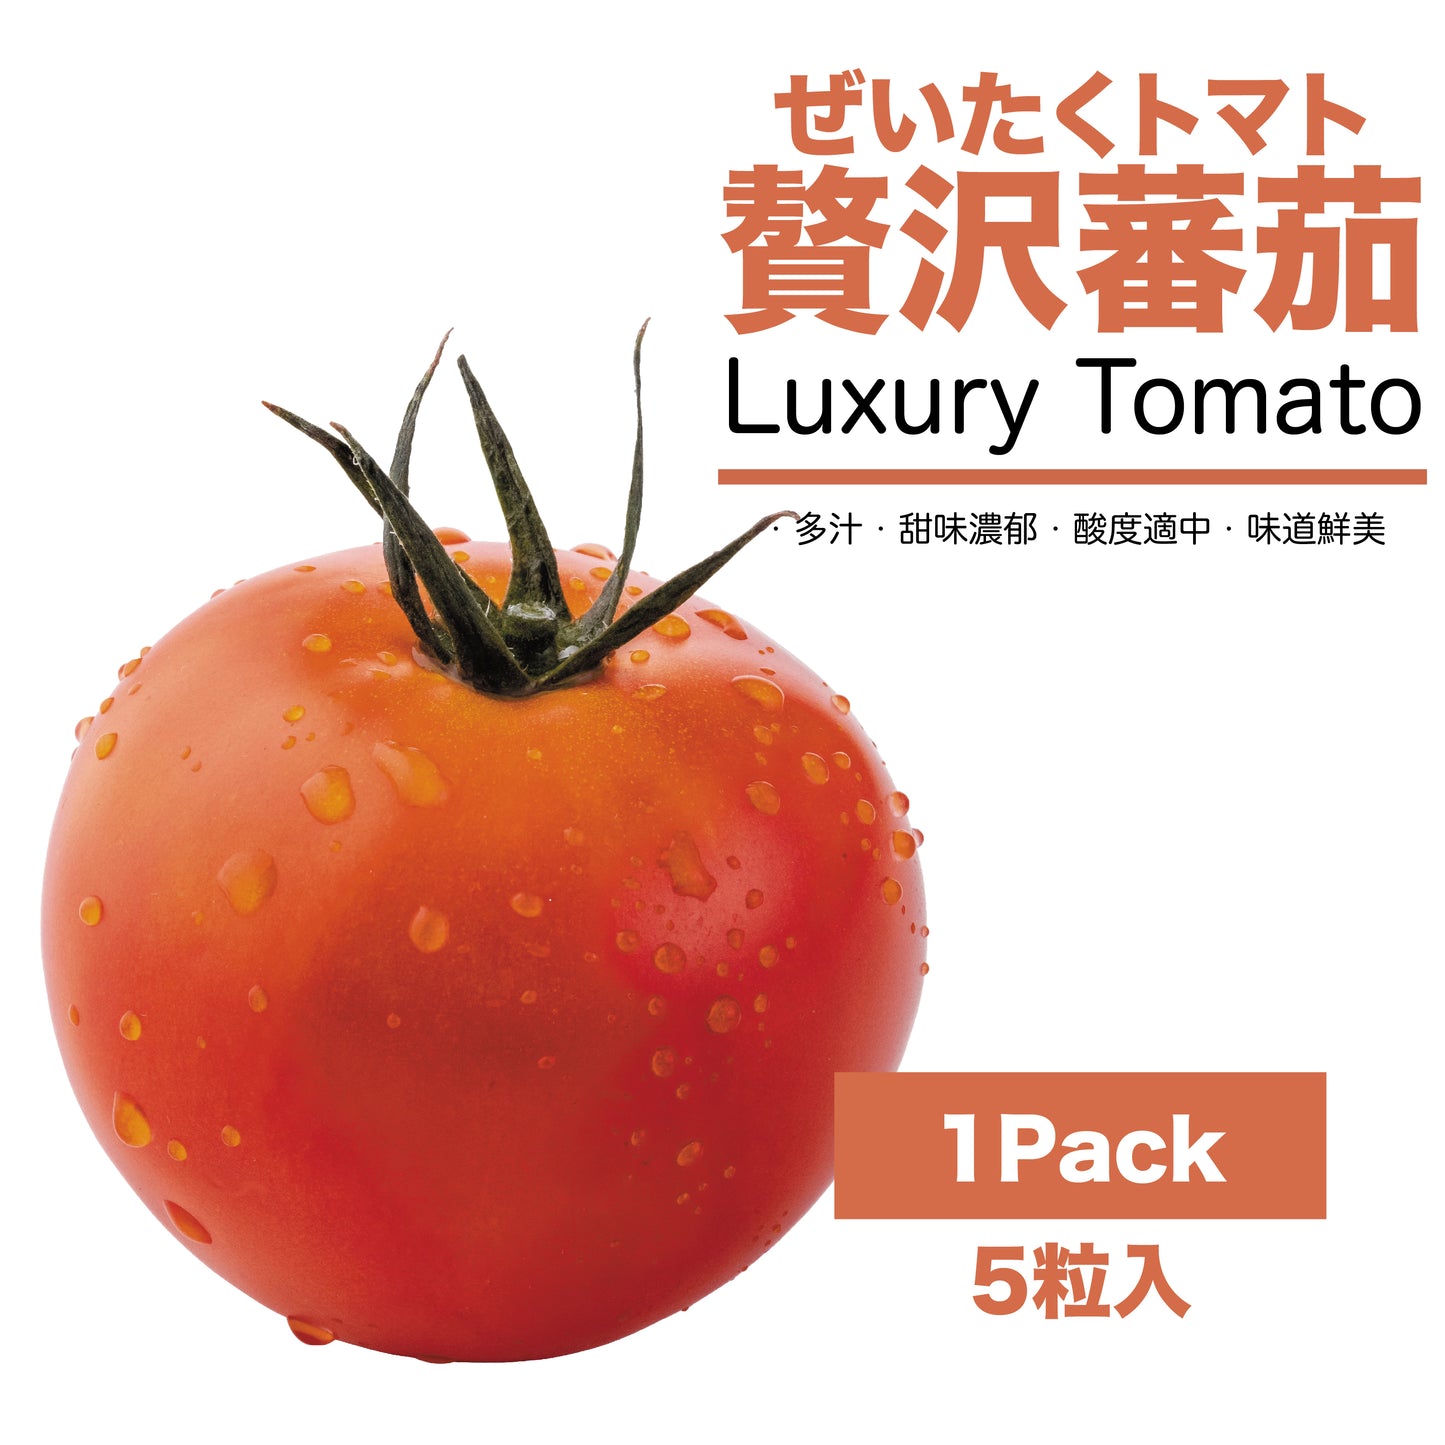 【現貨】日本長野県空運直送抵港-贅沢蕃茄Luxury Tomato-長野県ぜいたくトマト-長野ベリーファーム(Nagano Berry Farm)提供